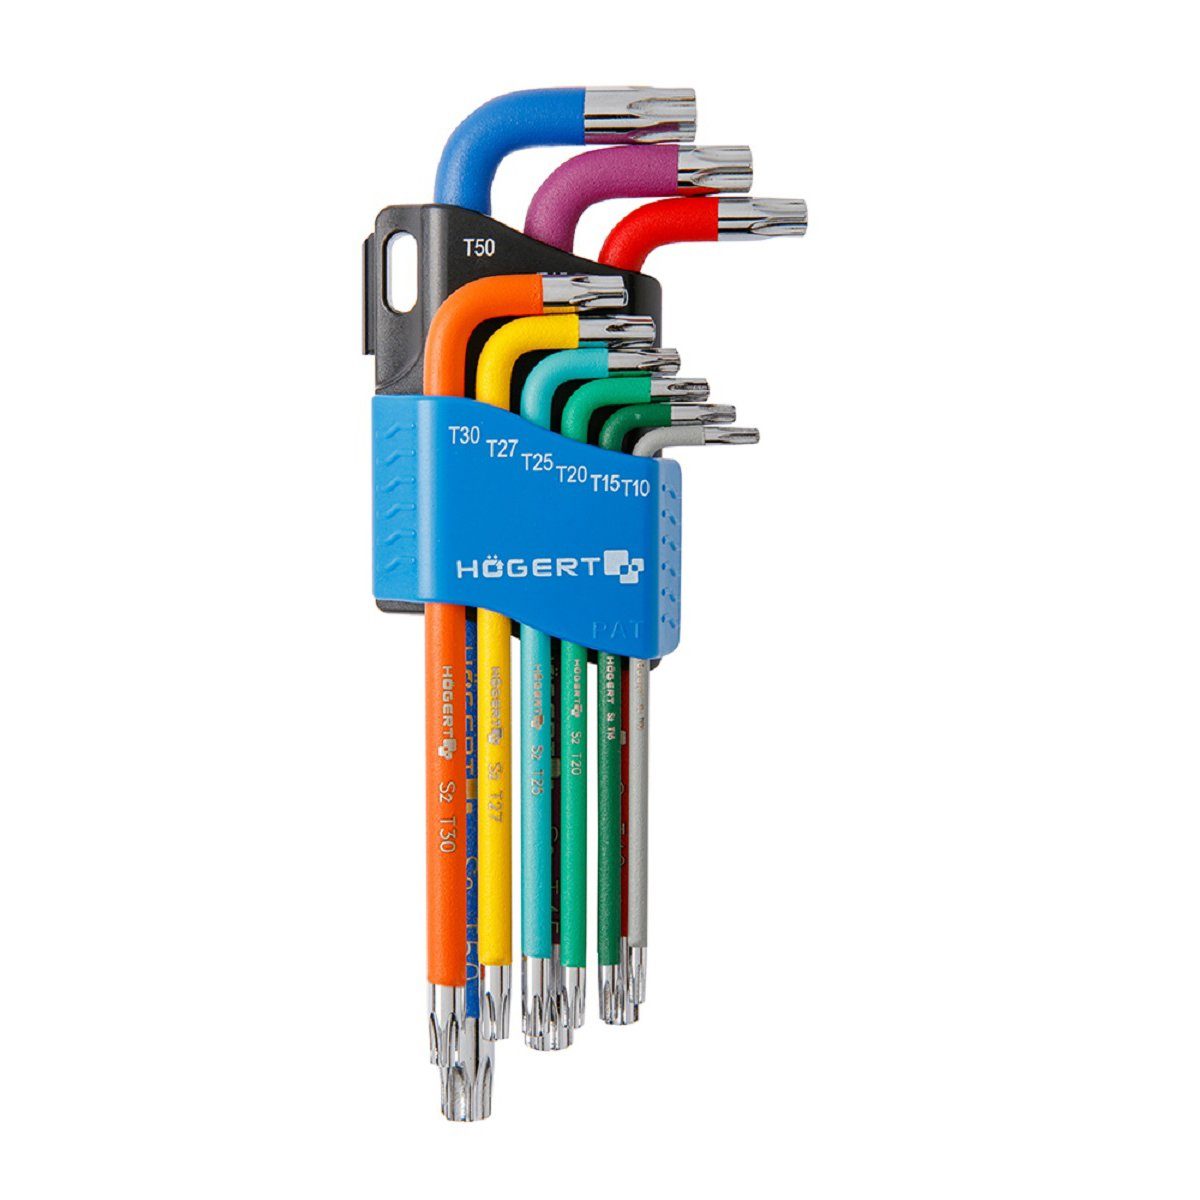 MS Beschläge Werkzeugset Multicolor Sechsrundschlüssel Set Högert Werkzeug